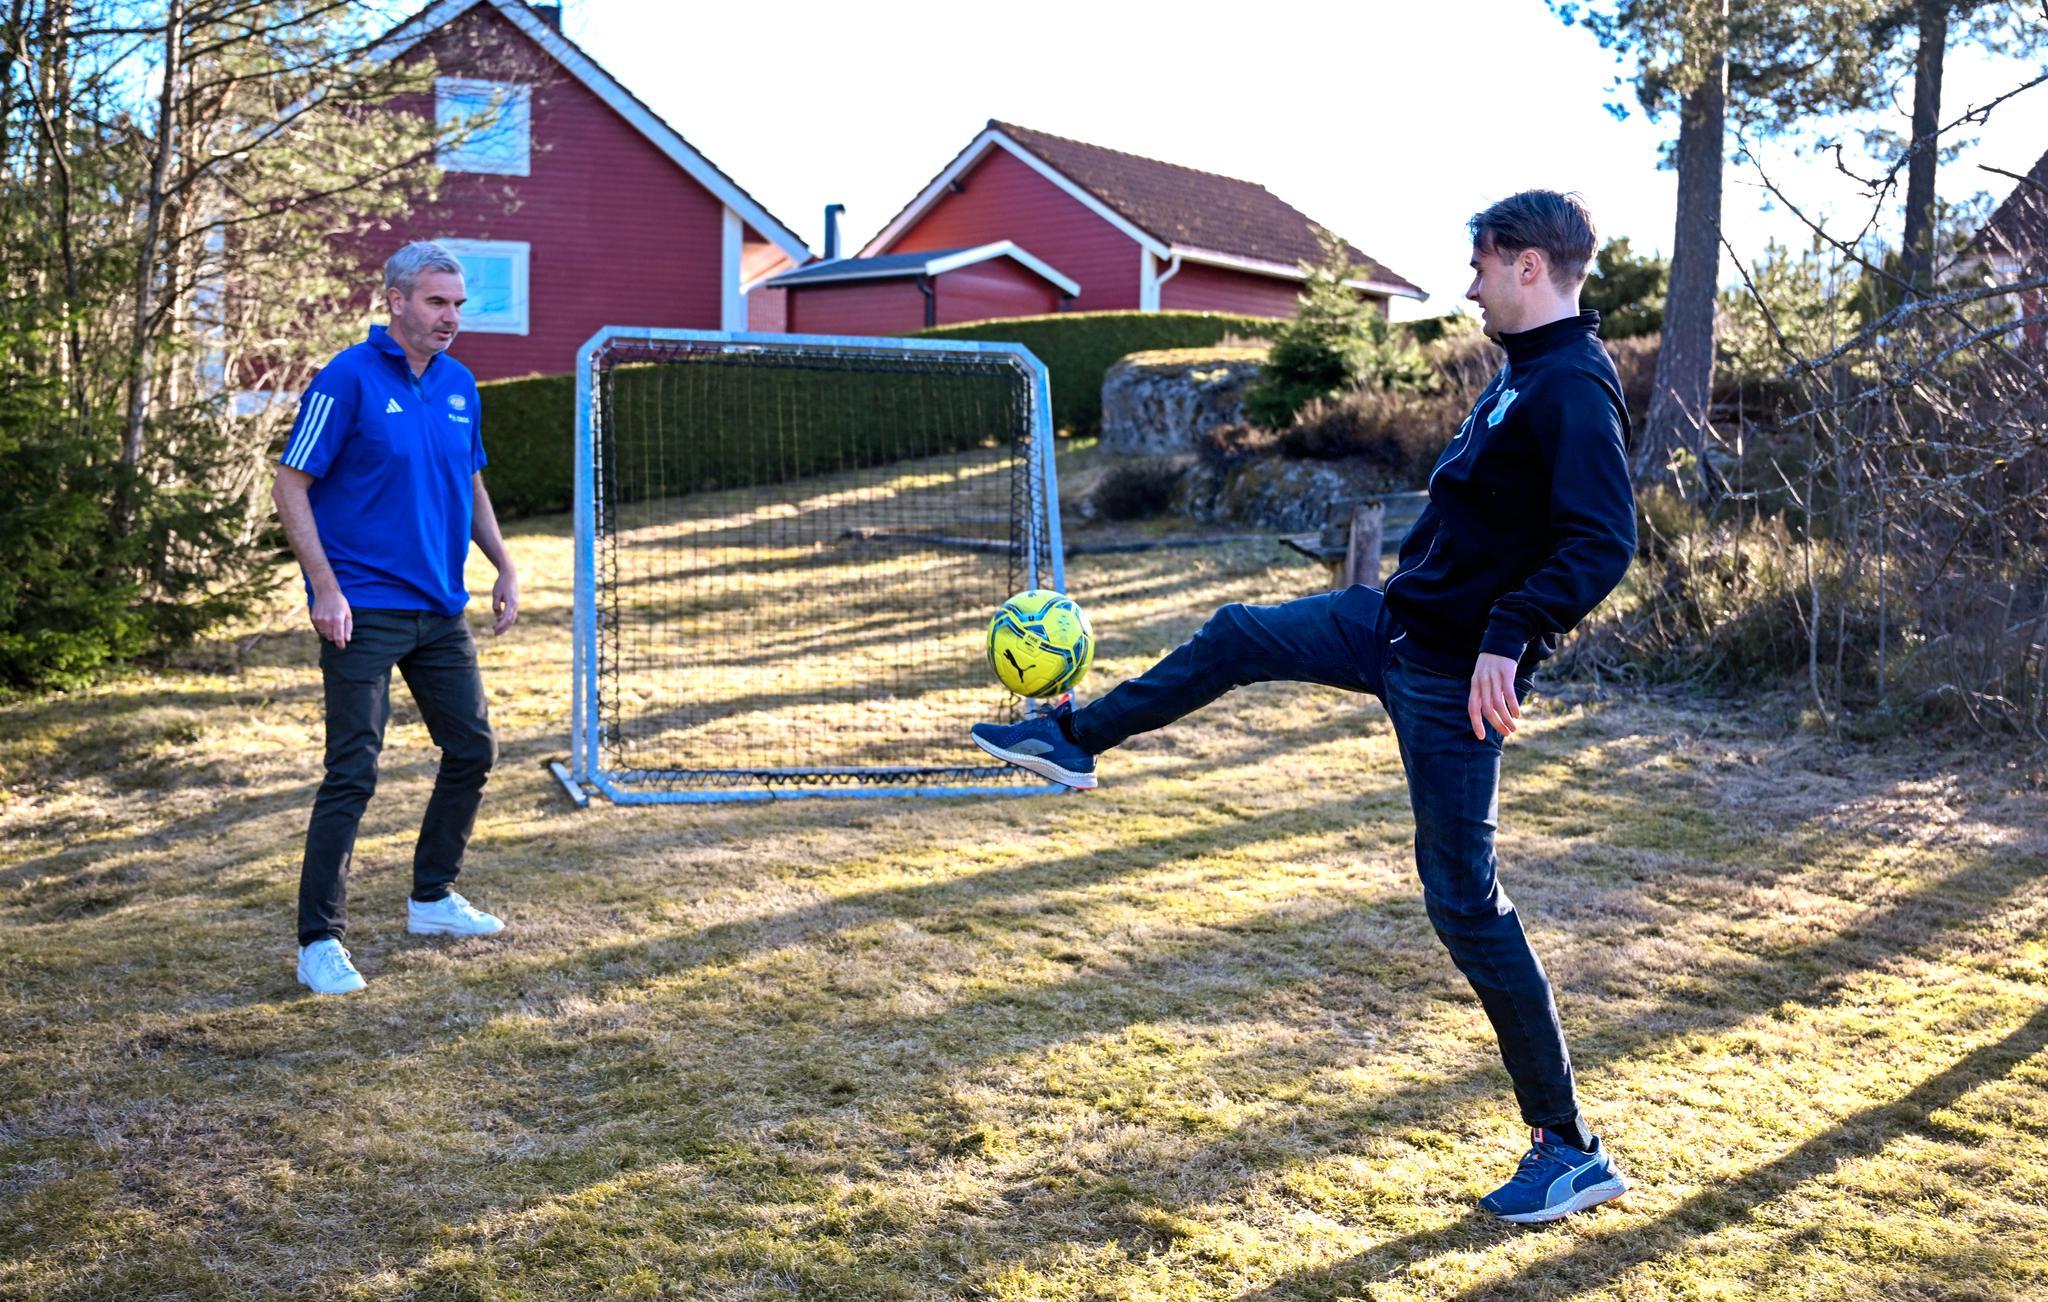  Petter og Tobias Myhre spiller «nullspretten» i hagen. Sistnevnte er ikke helt fornøyd med avleveringen fra sin tidligere trener.